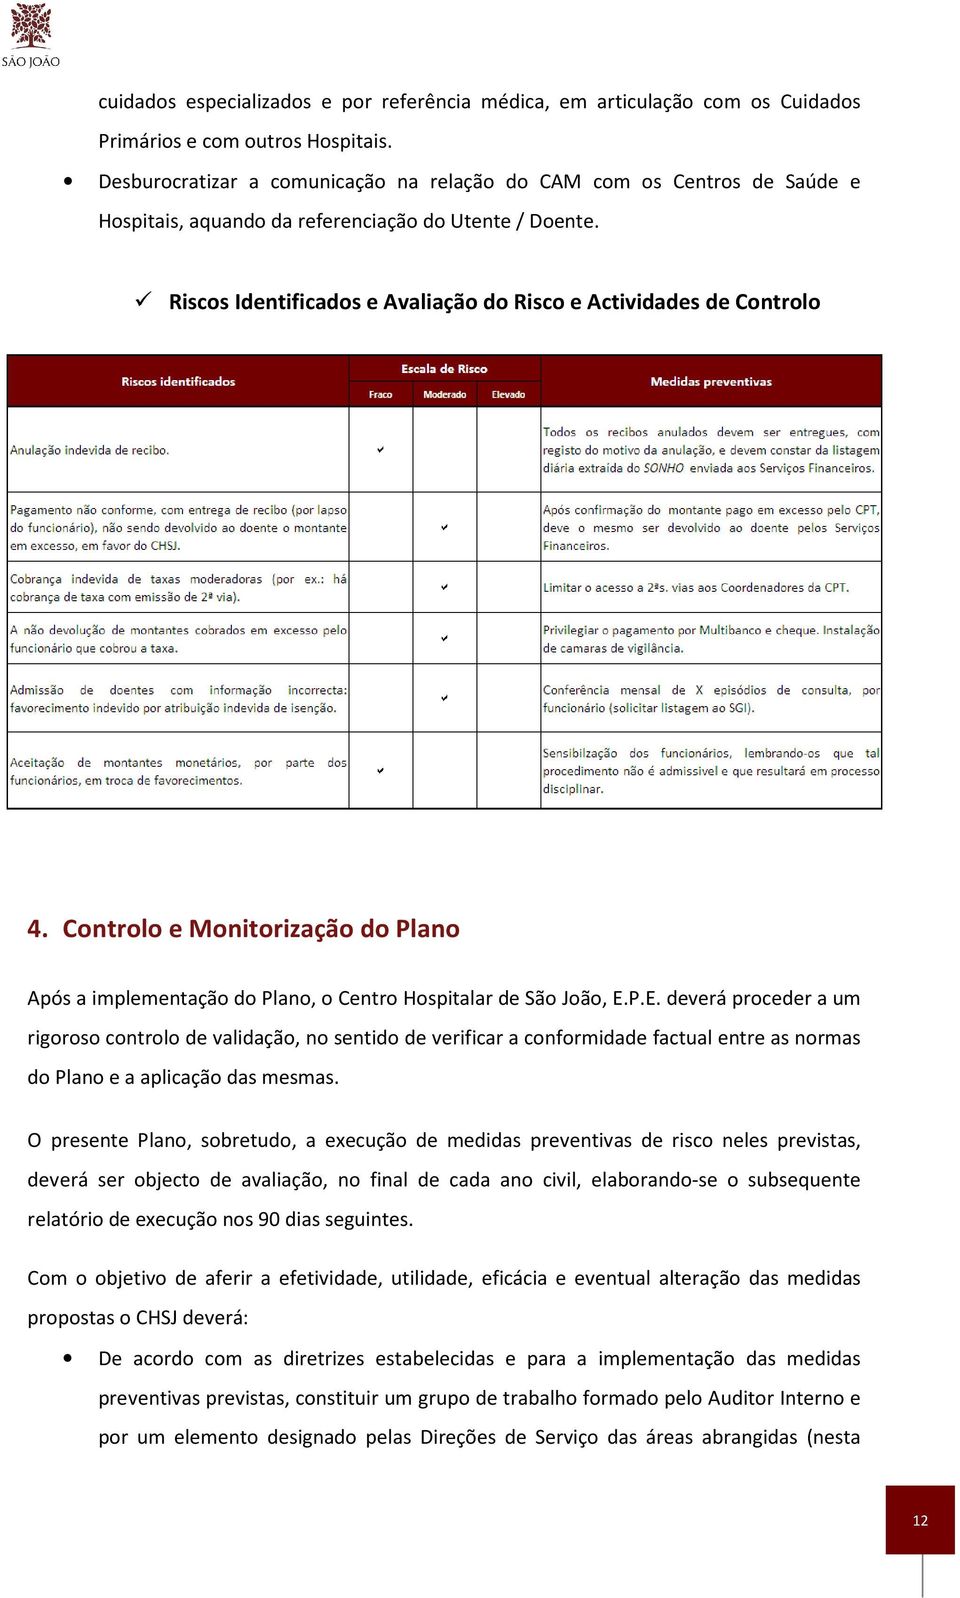 Controlo e Monitorização do Plano Após a implementação do Plano, o Centro Hospitalar de São João, E.